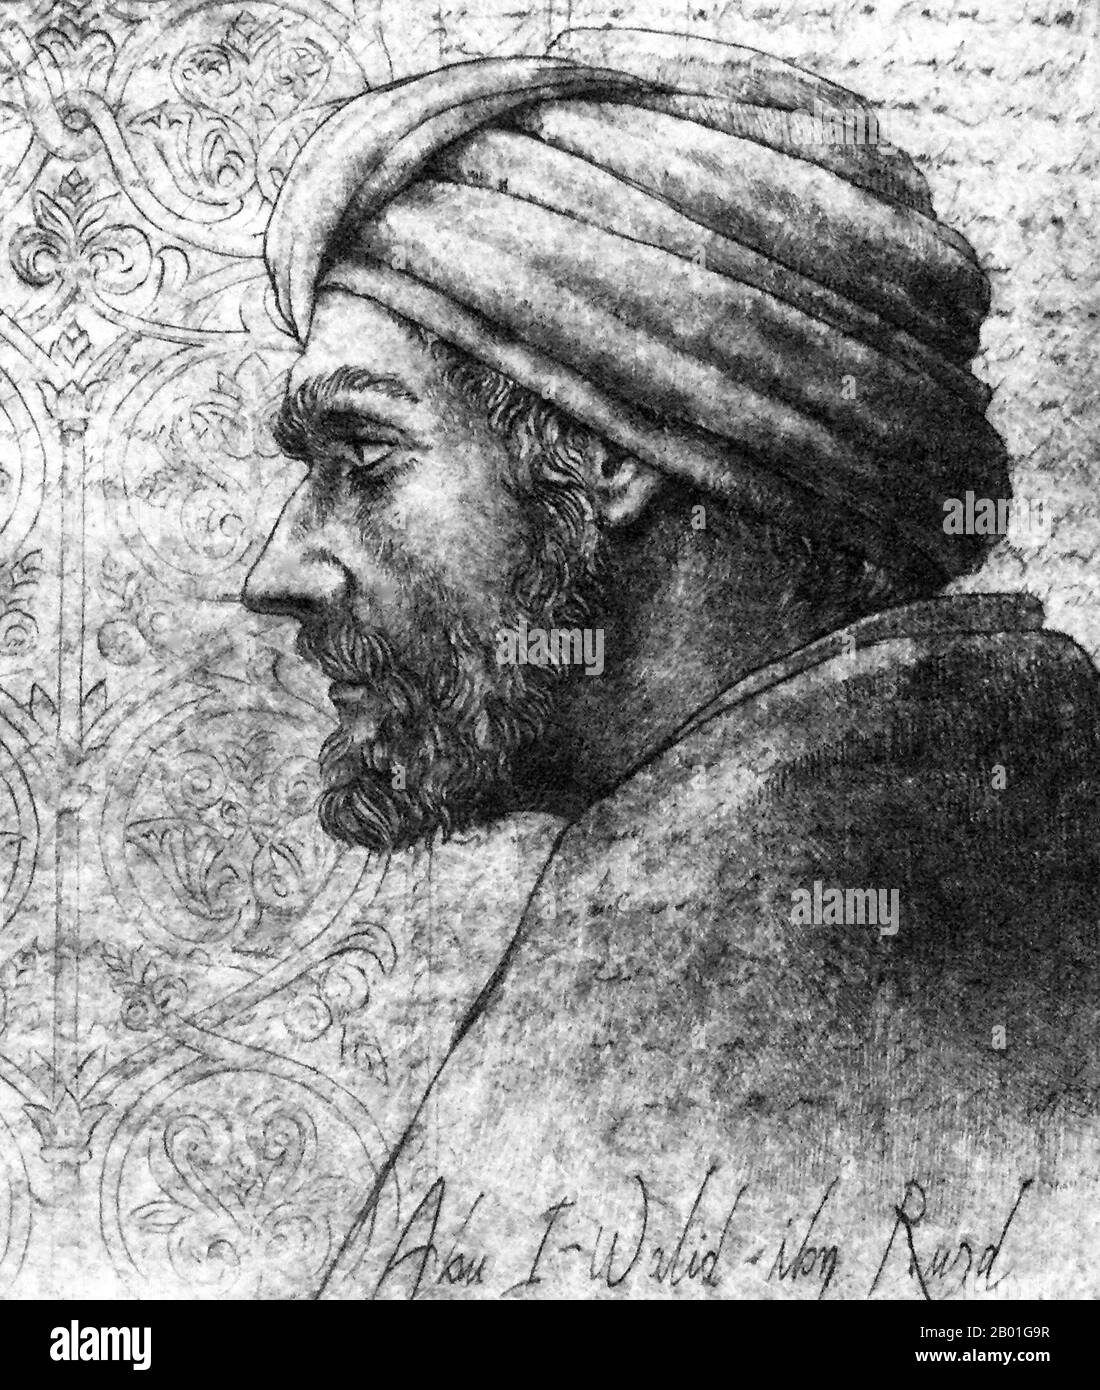 Spagna/al-Andalus: Ibn Rushd (1126 - 10 dicembre 1198), 12th ° secolo. Abū l-Walīd Muḥammad bin ʾAḥmad bin Rušd, meglio conosciuto come Ibn Rushd e nella letteratura europea come Averroes, era un politema musulmano; un maestro della filosofia aristotelica, della filosofia islamica, della teologia islamica, della legge e della giurisprudenza Maliki, della logica, della psicologia, della politica, della teoria della musica araba, e le scienze della medicina, dell'astronomia, della geografia, della matematica, della fisica e della meccanica celeste. Nato a Córdoba, al Andalus, la Spagna moderna, morì a Marrakech, in Marocco. La sua scuola di filosofia è conosciuta come Averroismo. Foto Stock